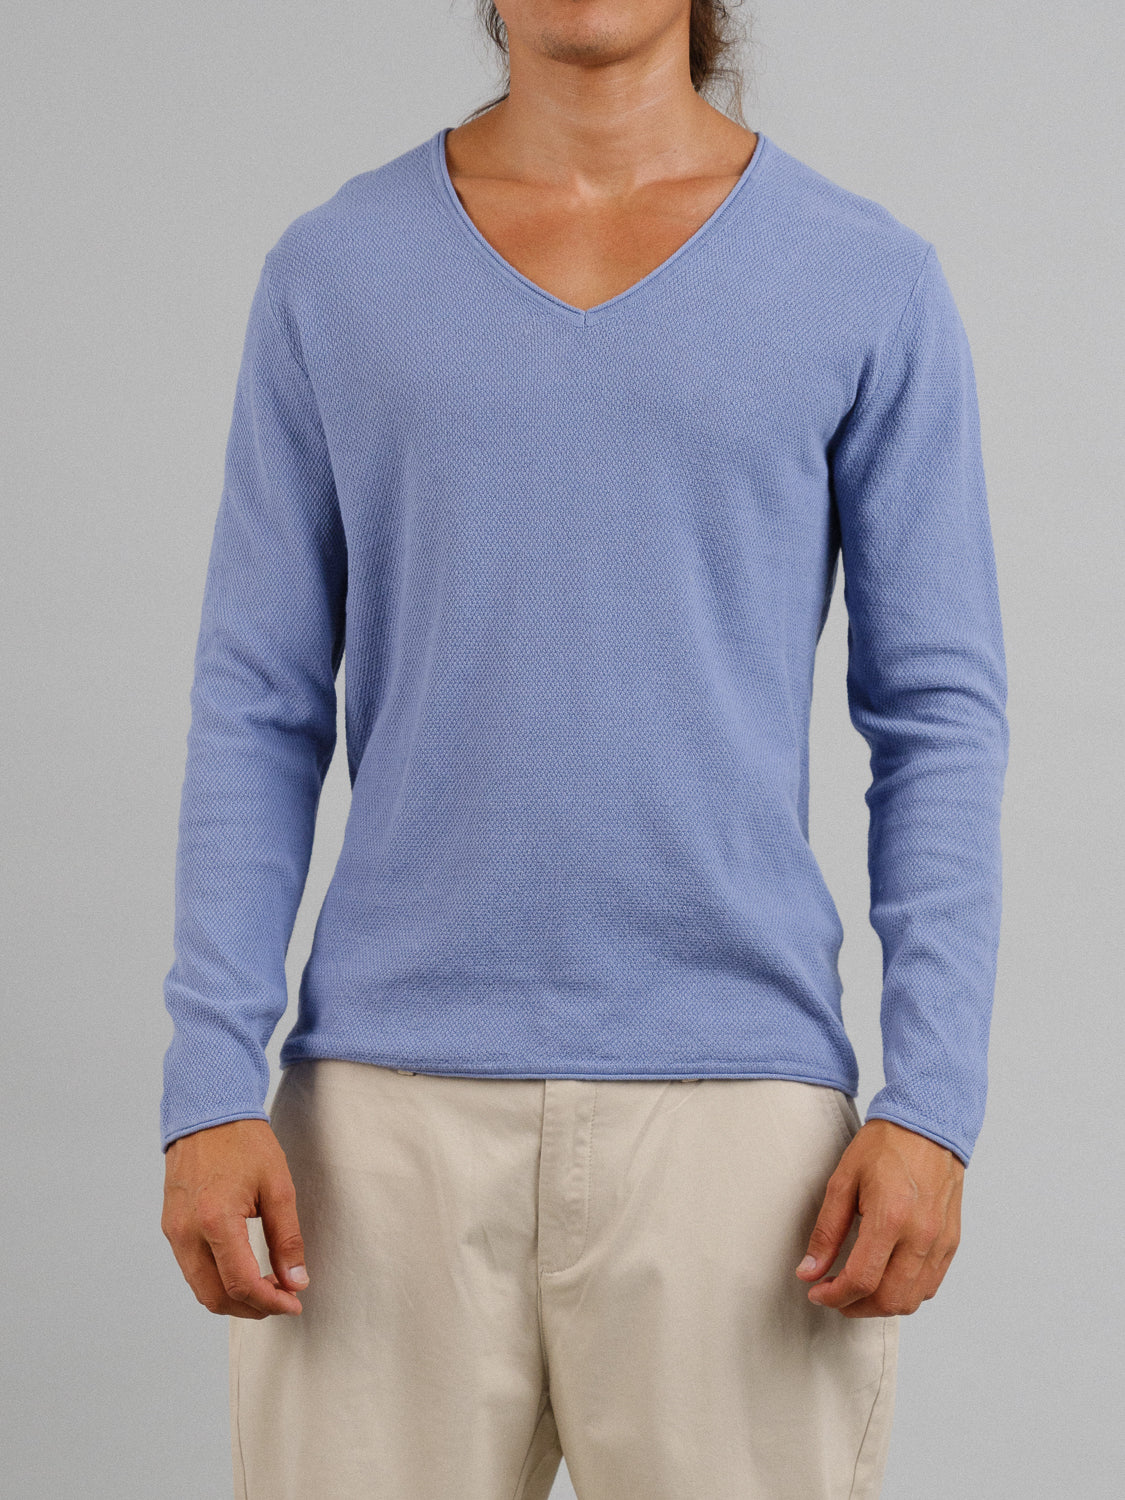 Amalfi Long Sleeve Lightweight Deep V Neck Knitted Top